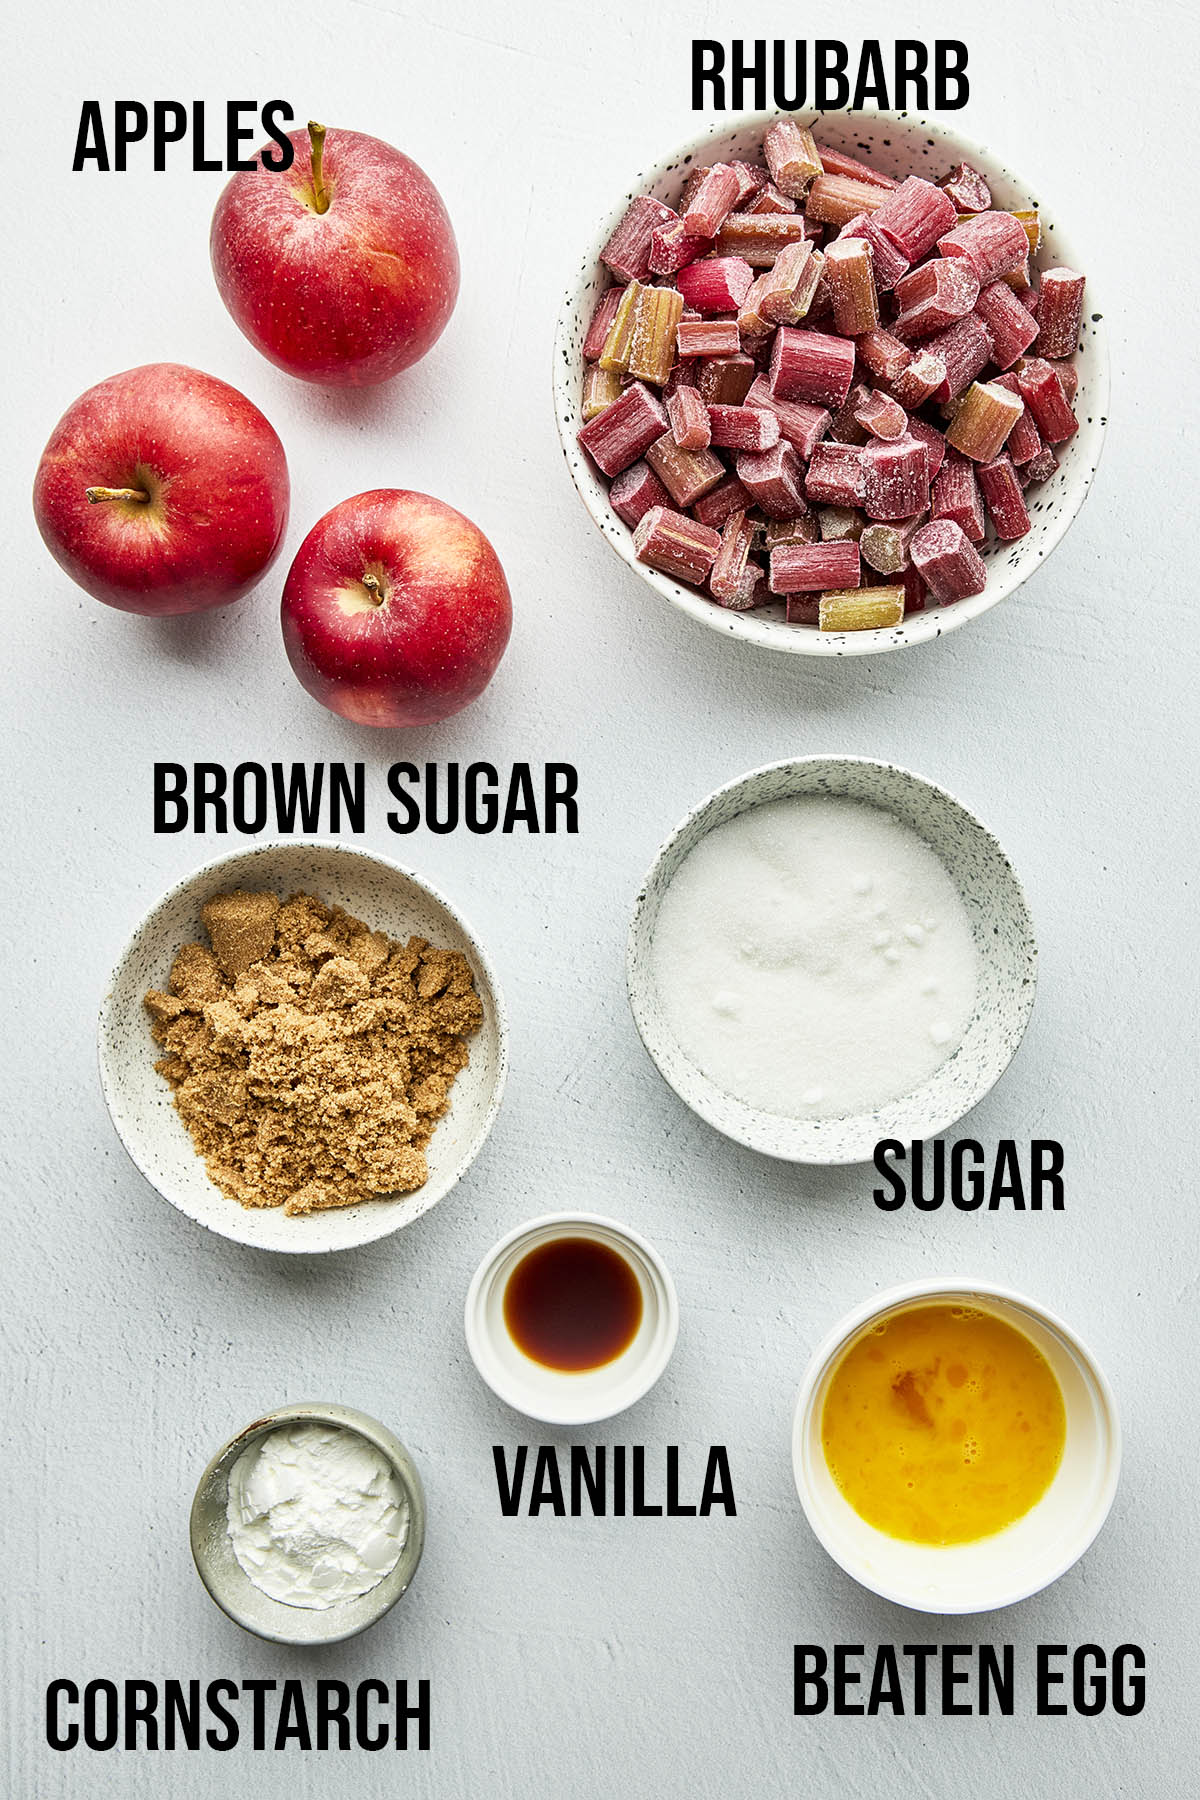 Apple rhubarb pie ingredients with labels.